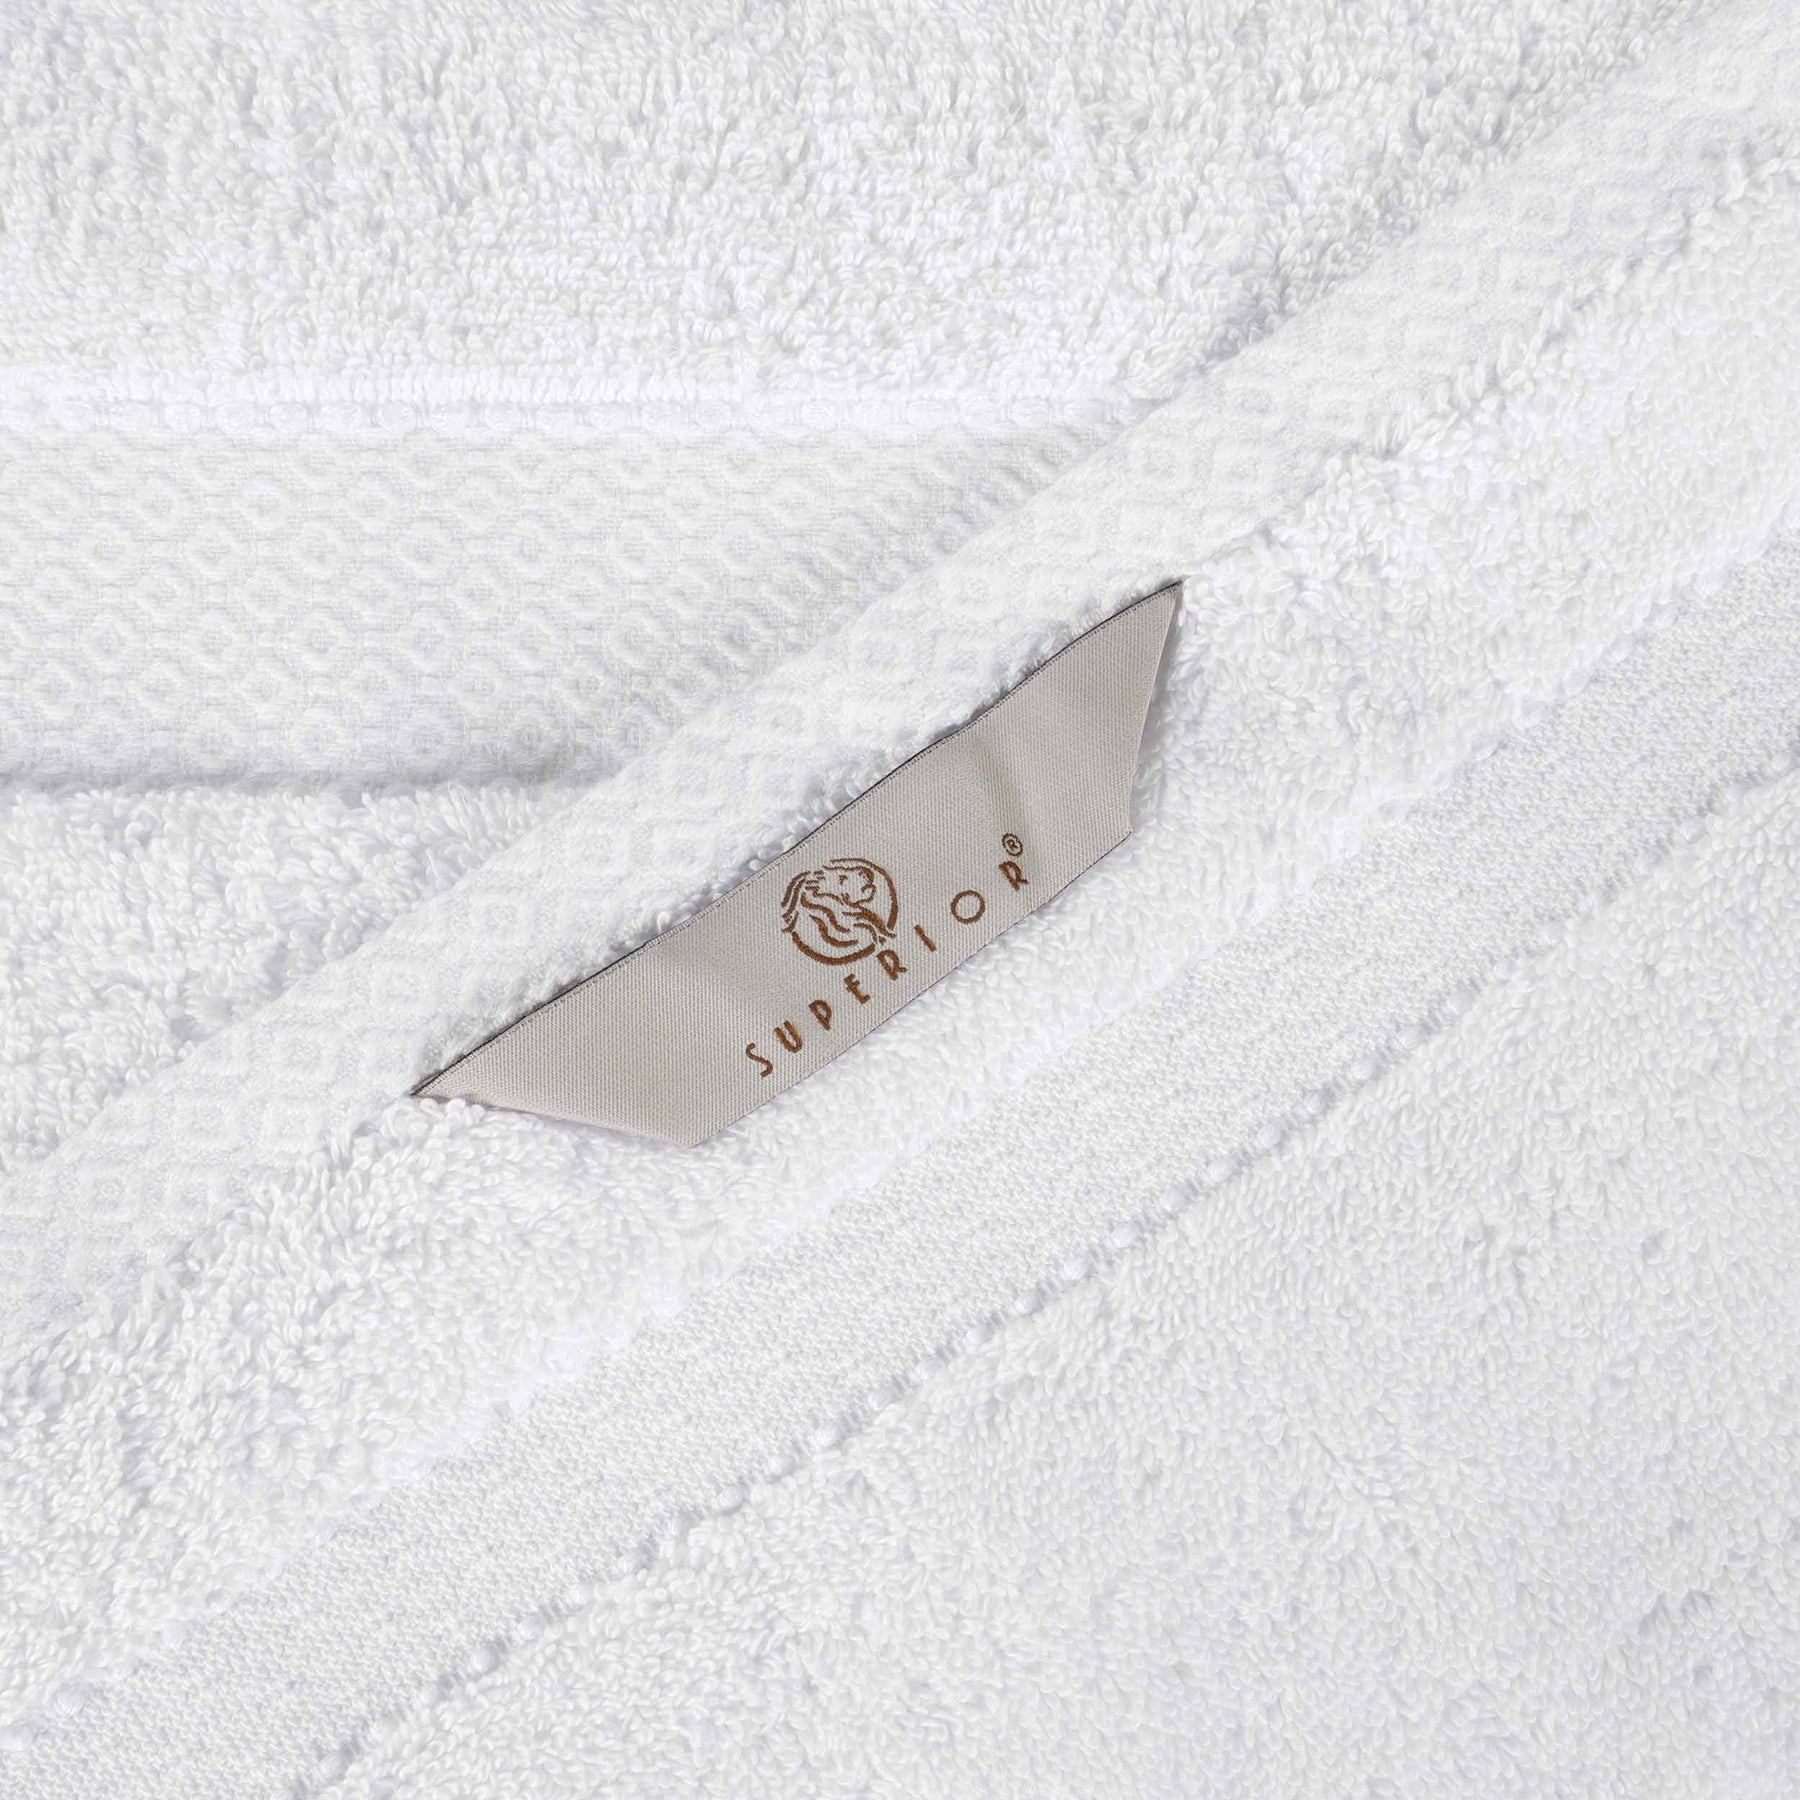 Niles Egyptian Giza Cotton Dobby Ultra-Plush Bath Towel - White